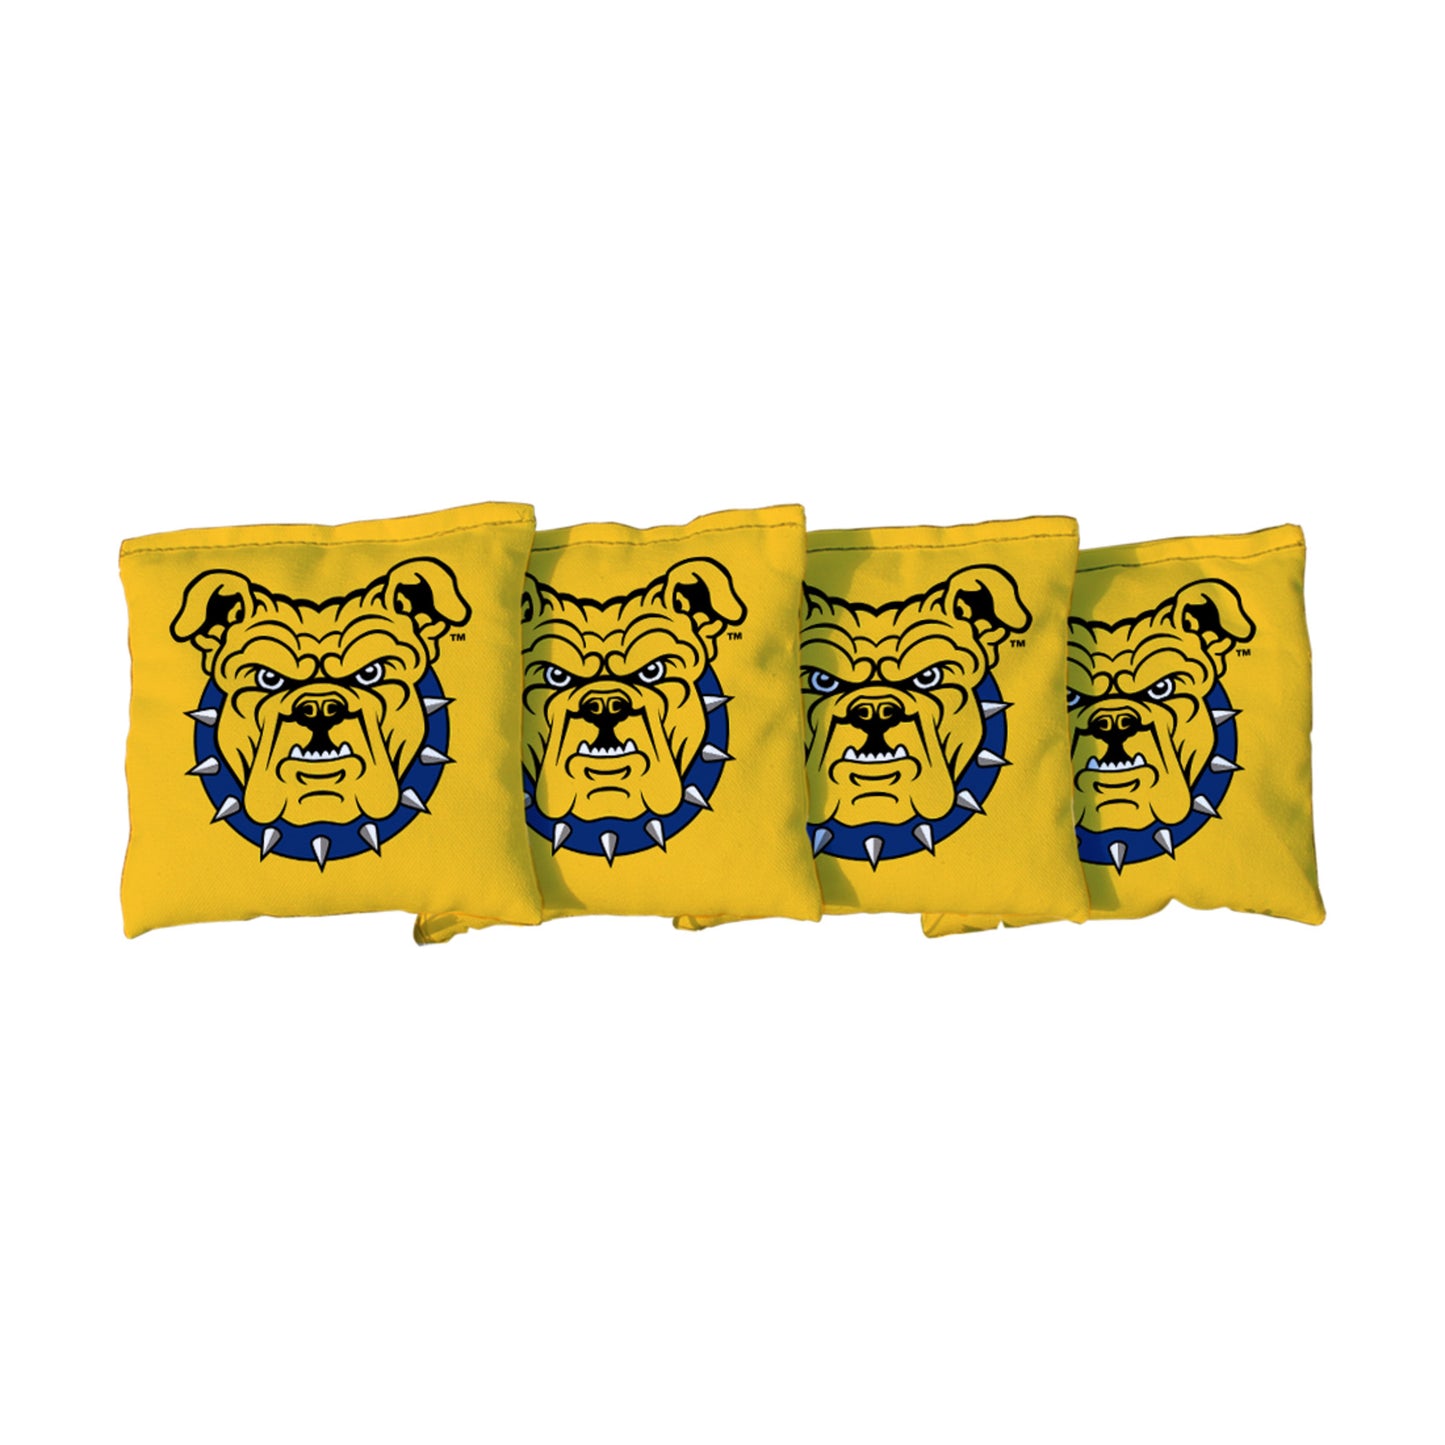 North Carolina A&T State University Aggies | Yellow Corn Filled Cornhole Bags